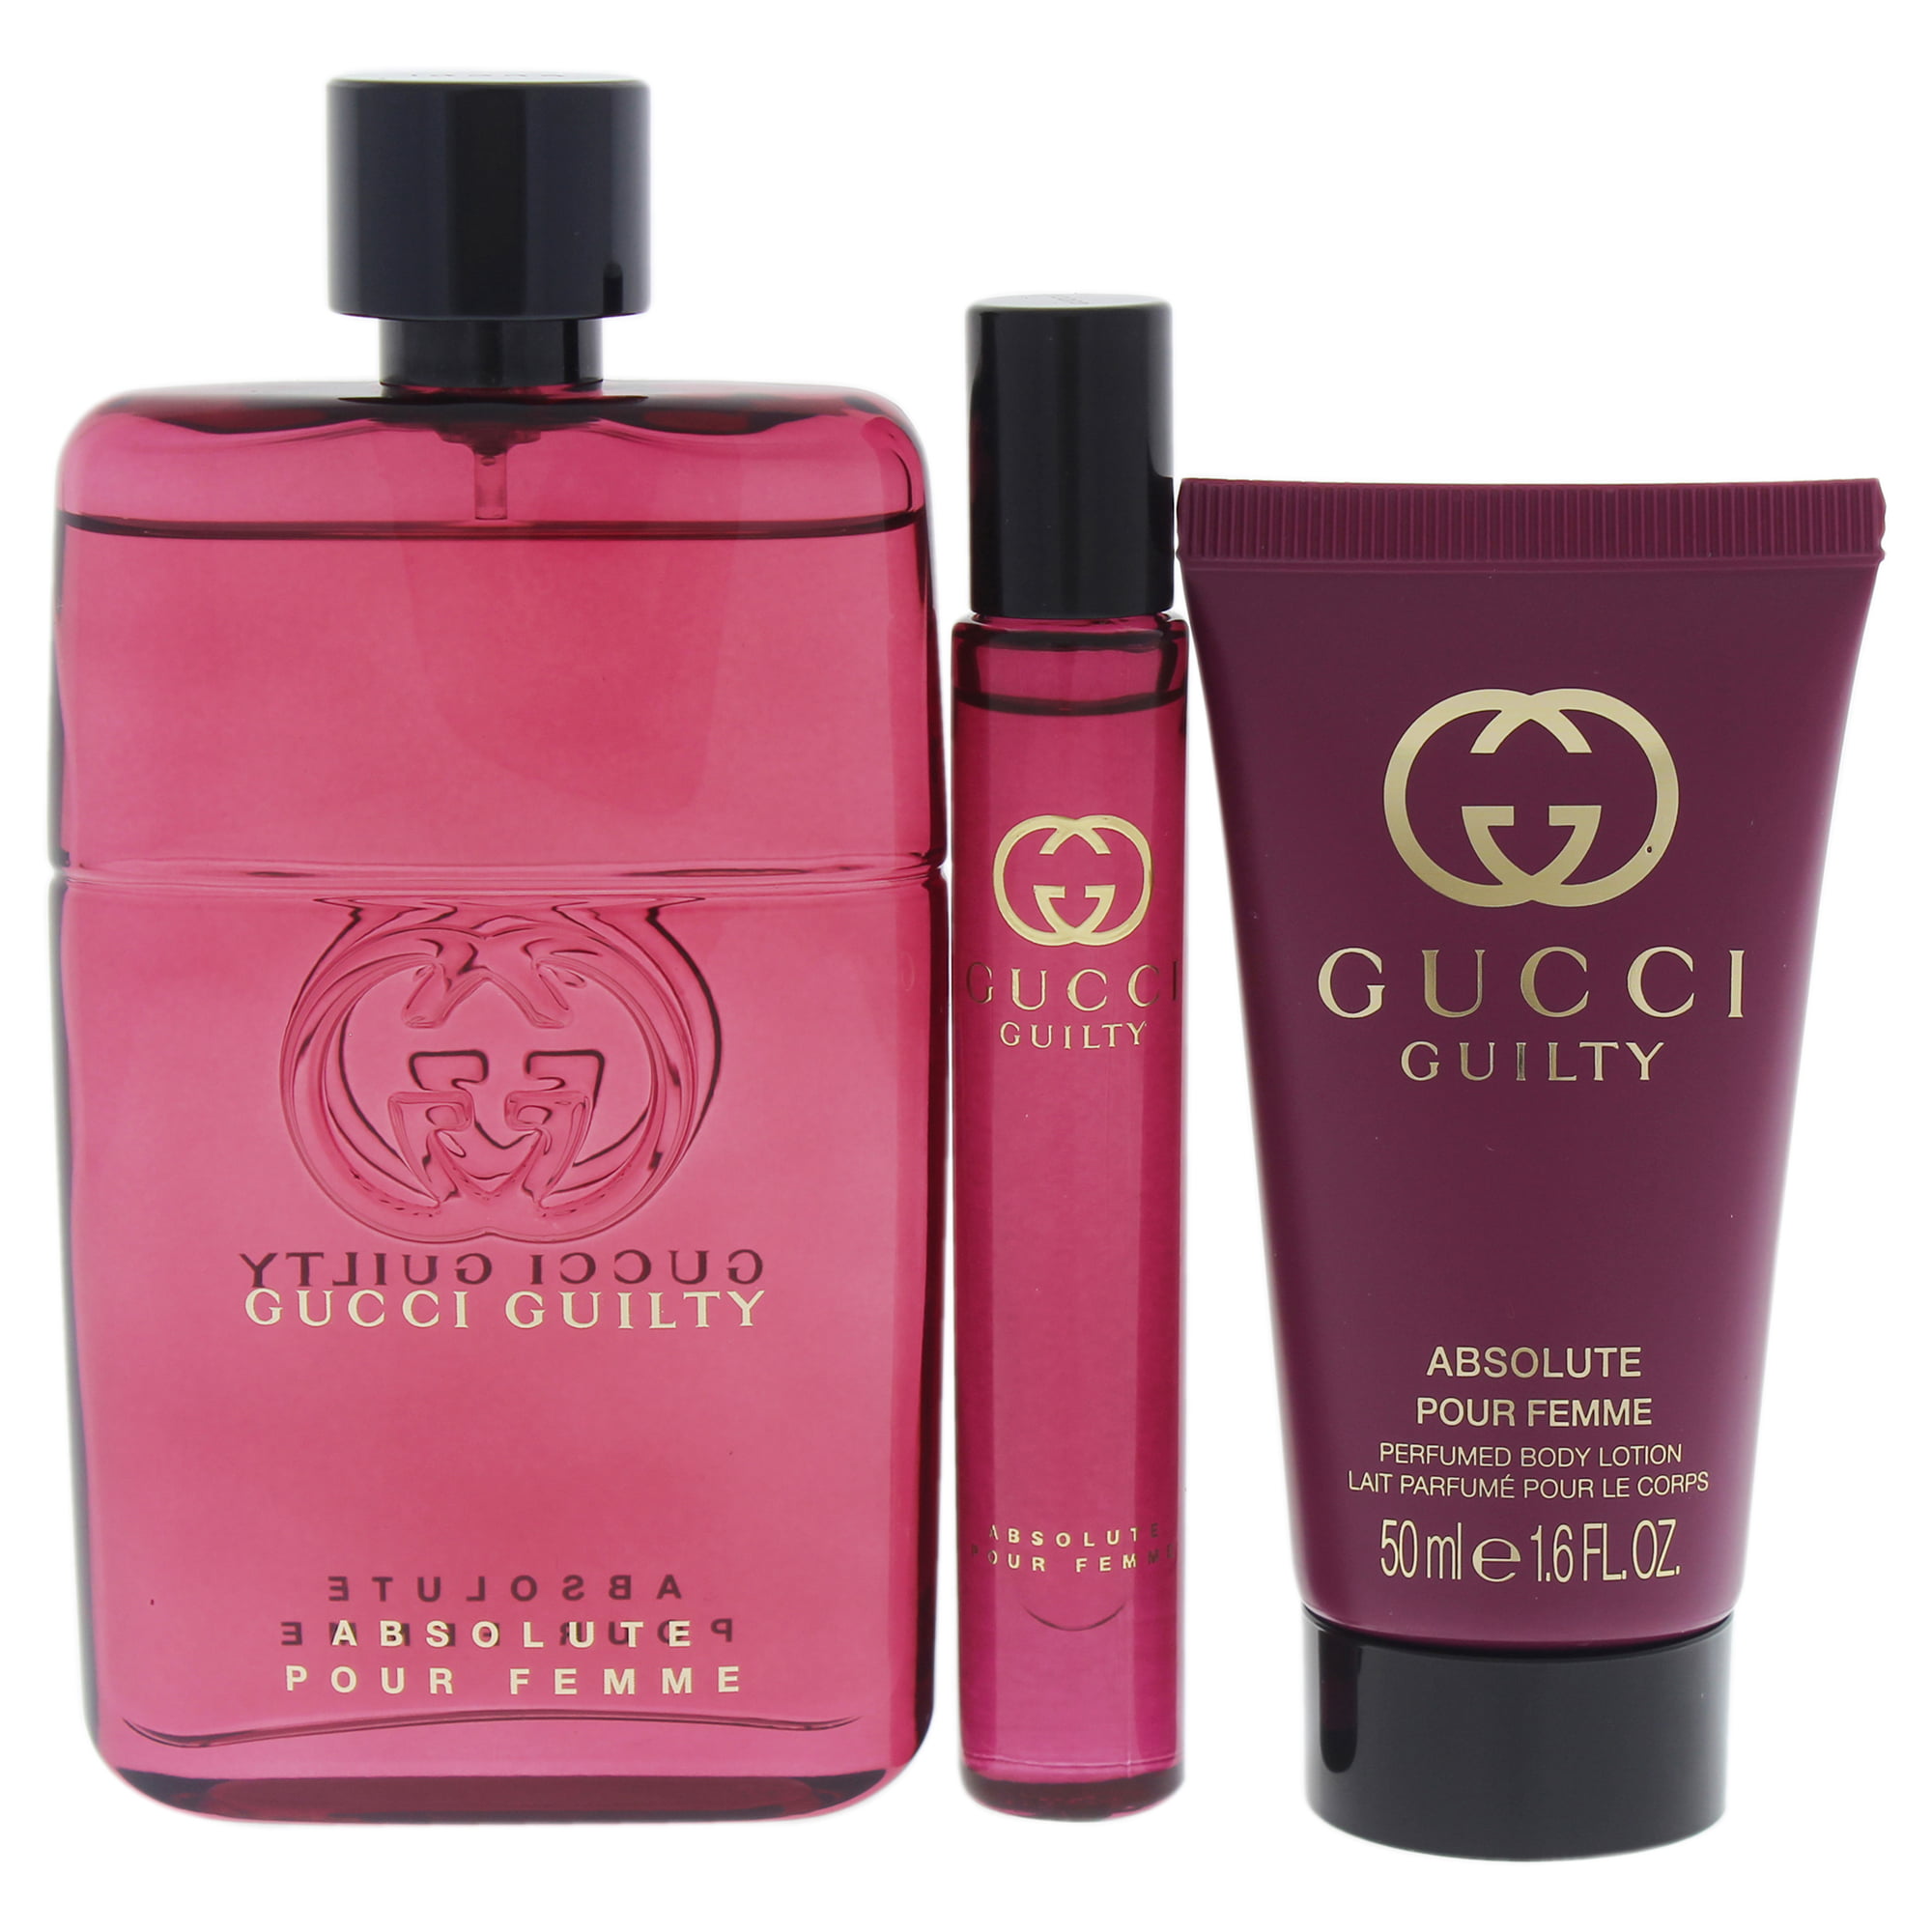 Gucci guilty absolute pour femme. Escada Flor del Sol Perfumed body Lotion lait parfume pour le Corps 50 mle.